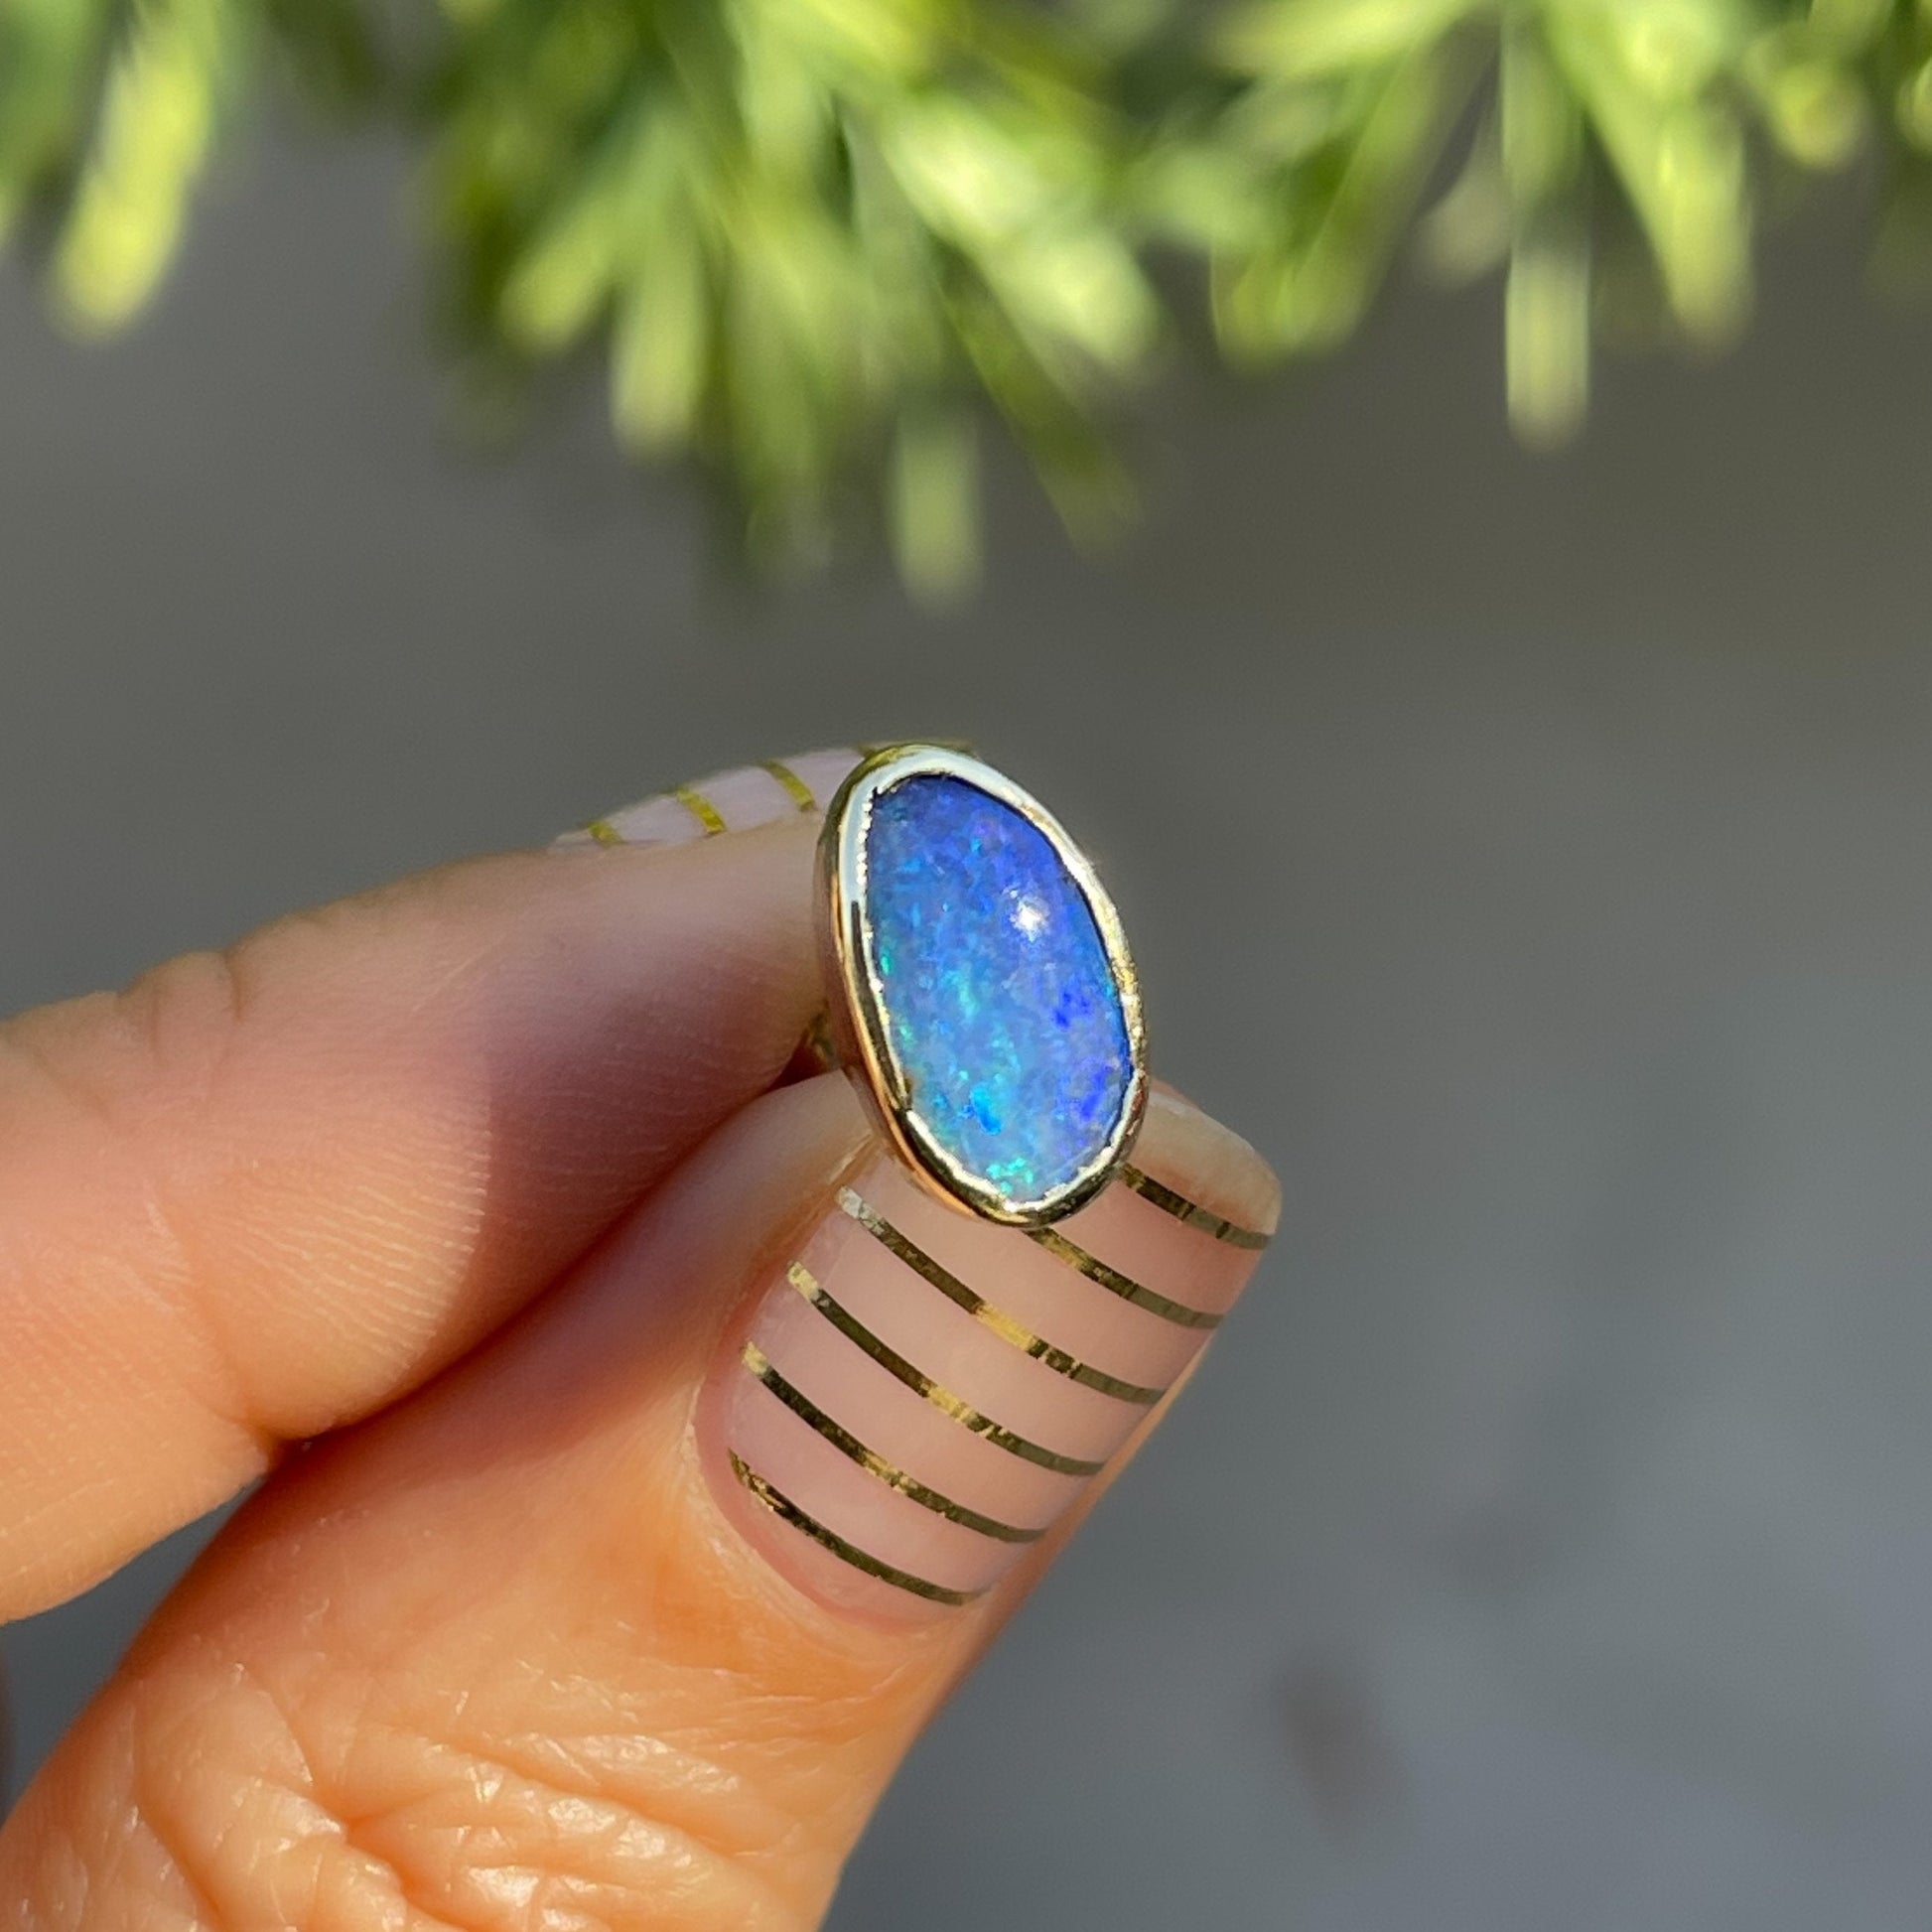 Australian opal earrings with blue opals by NIXIN Jewelry